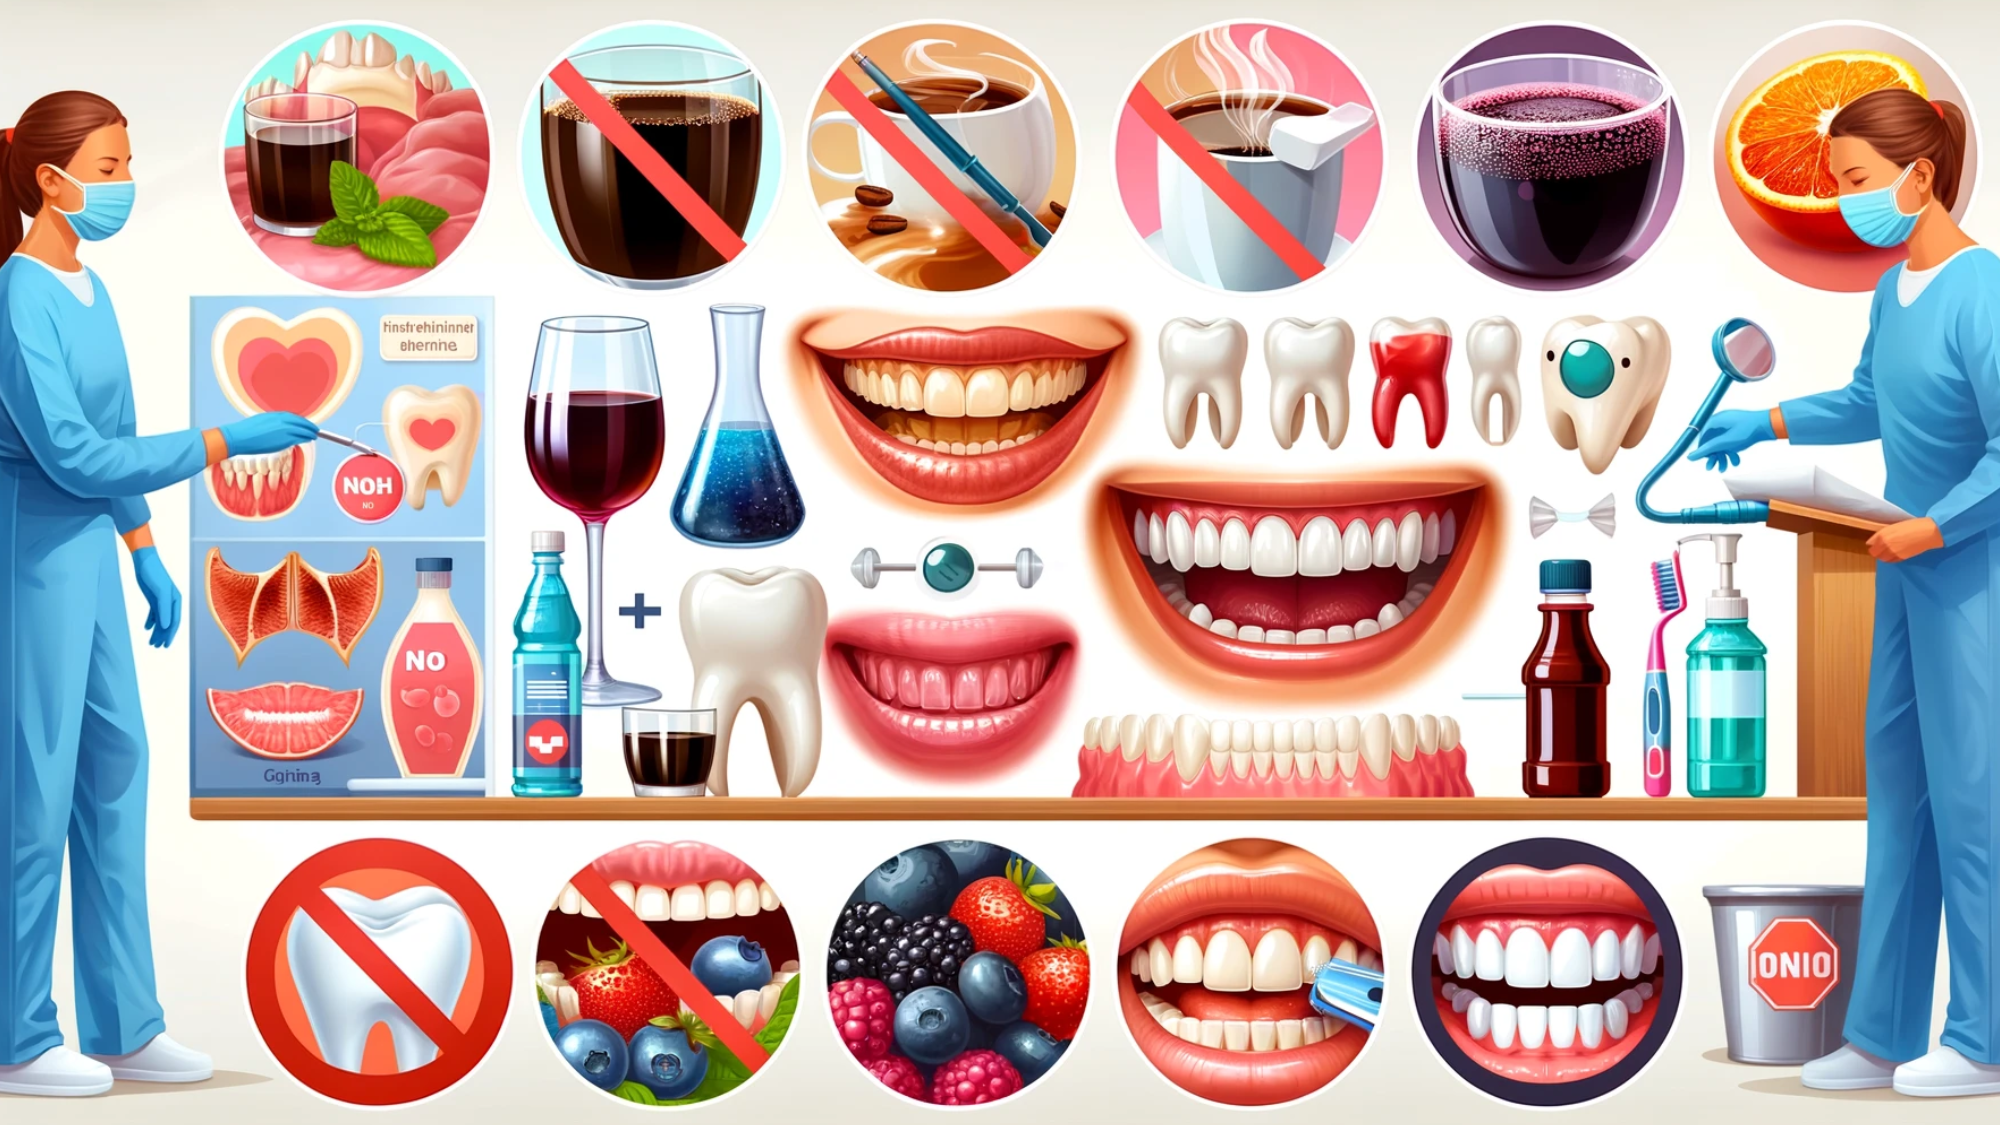 Guide til tannfargebevaring med 'nei'-tegn for visse matvarer og tannhygieneinstruksjoner.